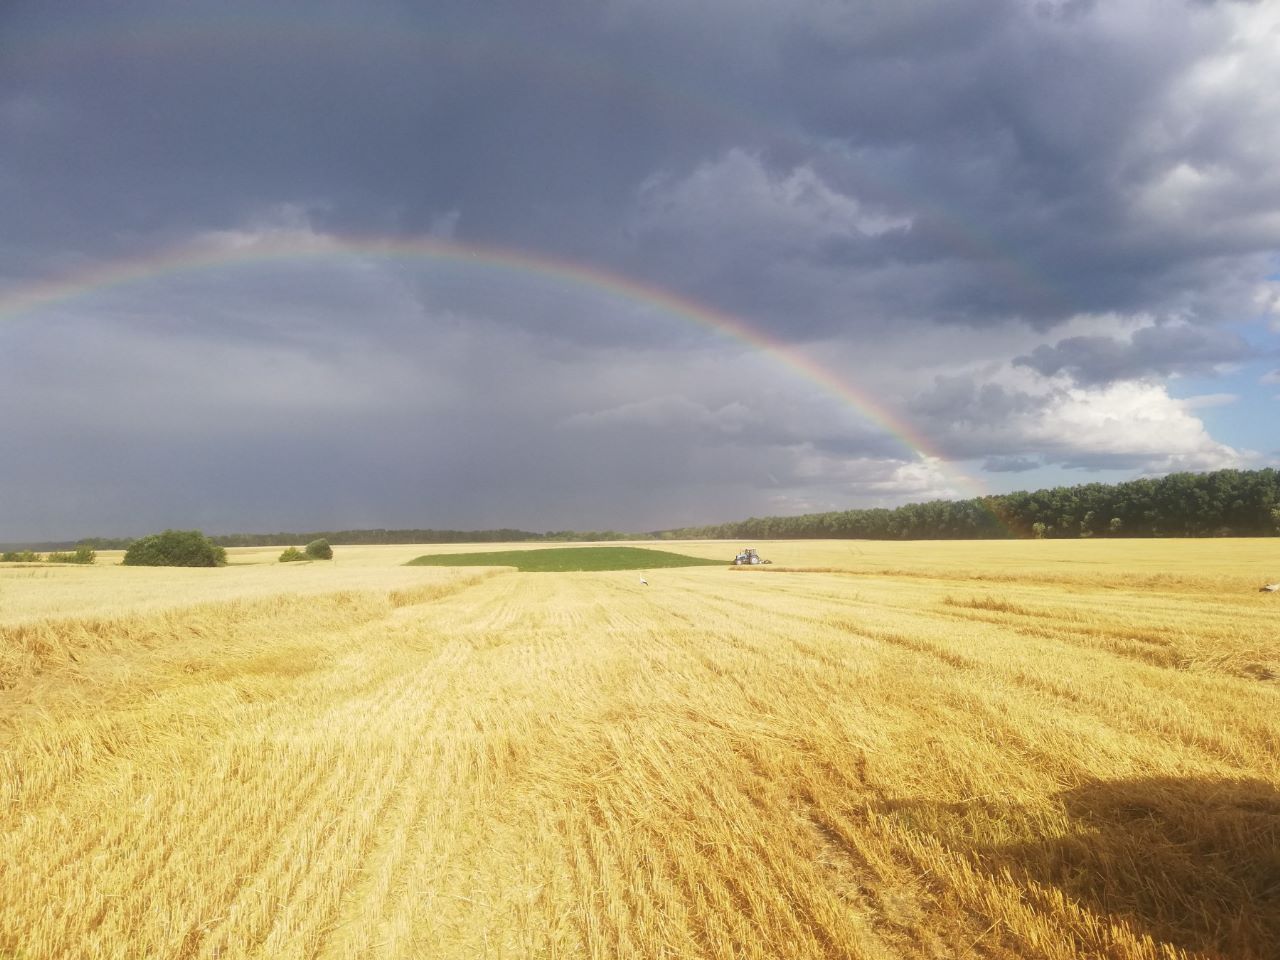 Жнива-2023: В Україні намолочено 33,7 млн тонн зернових та олійних культур